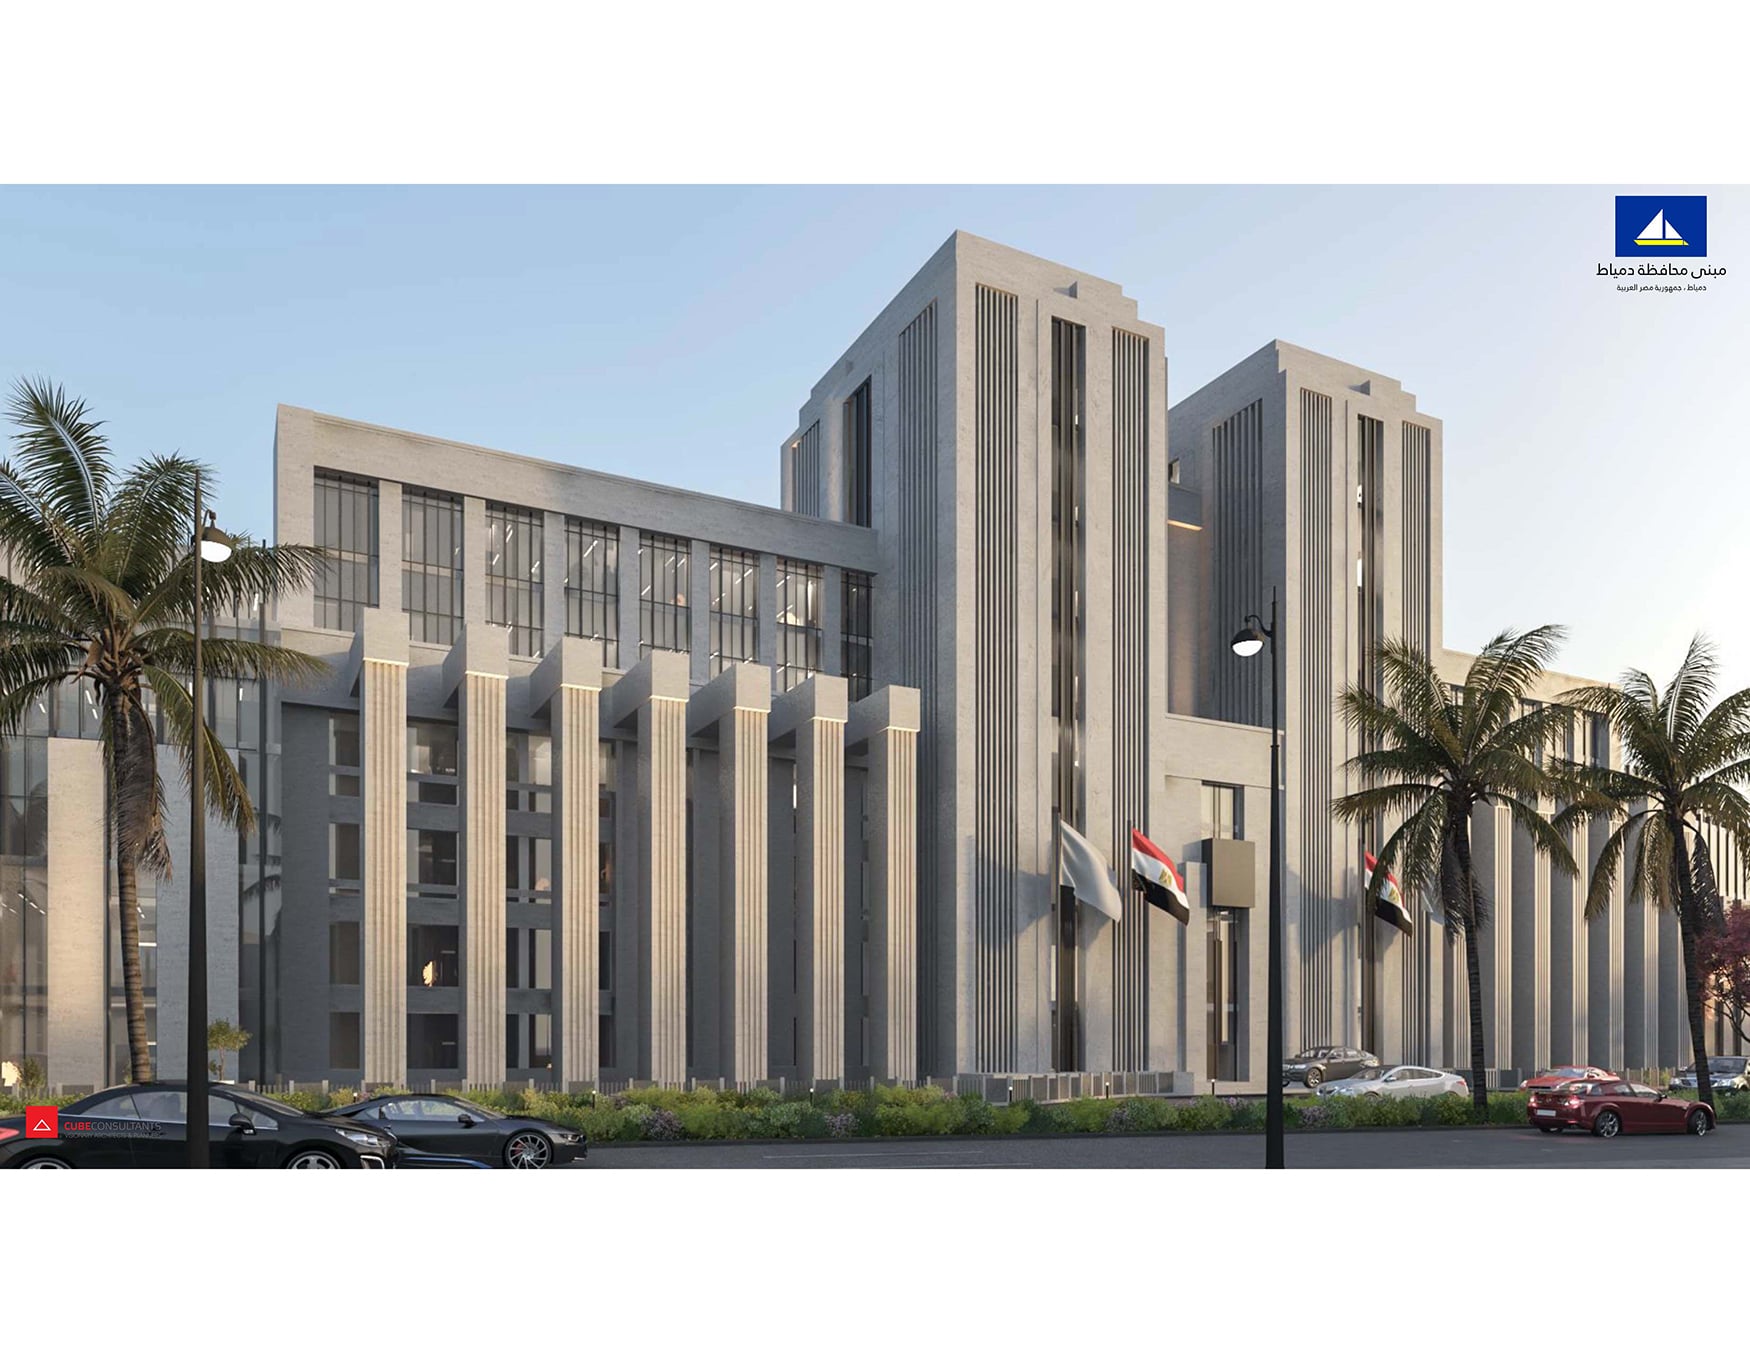 Damietta Municipality Building